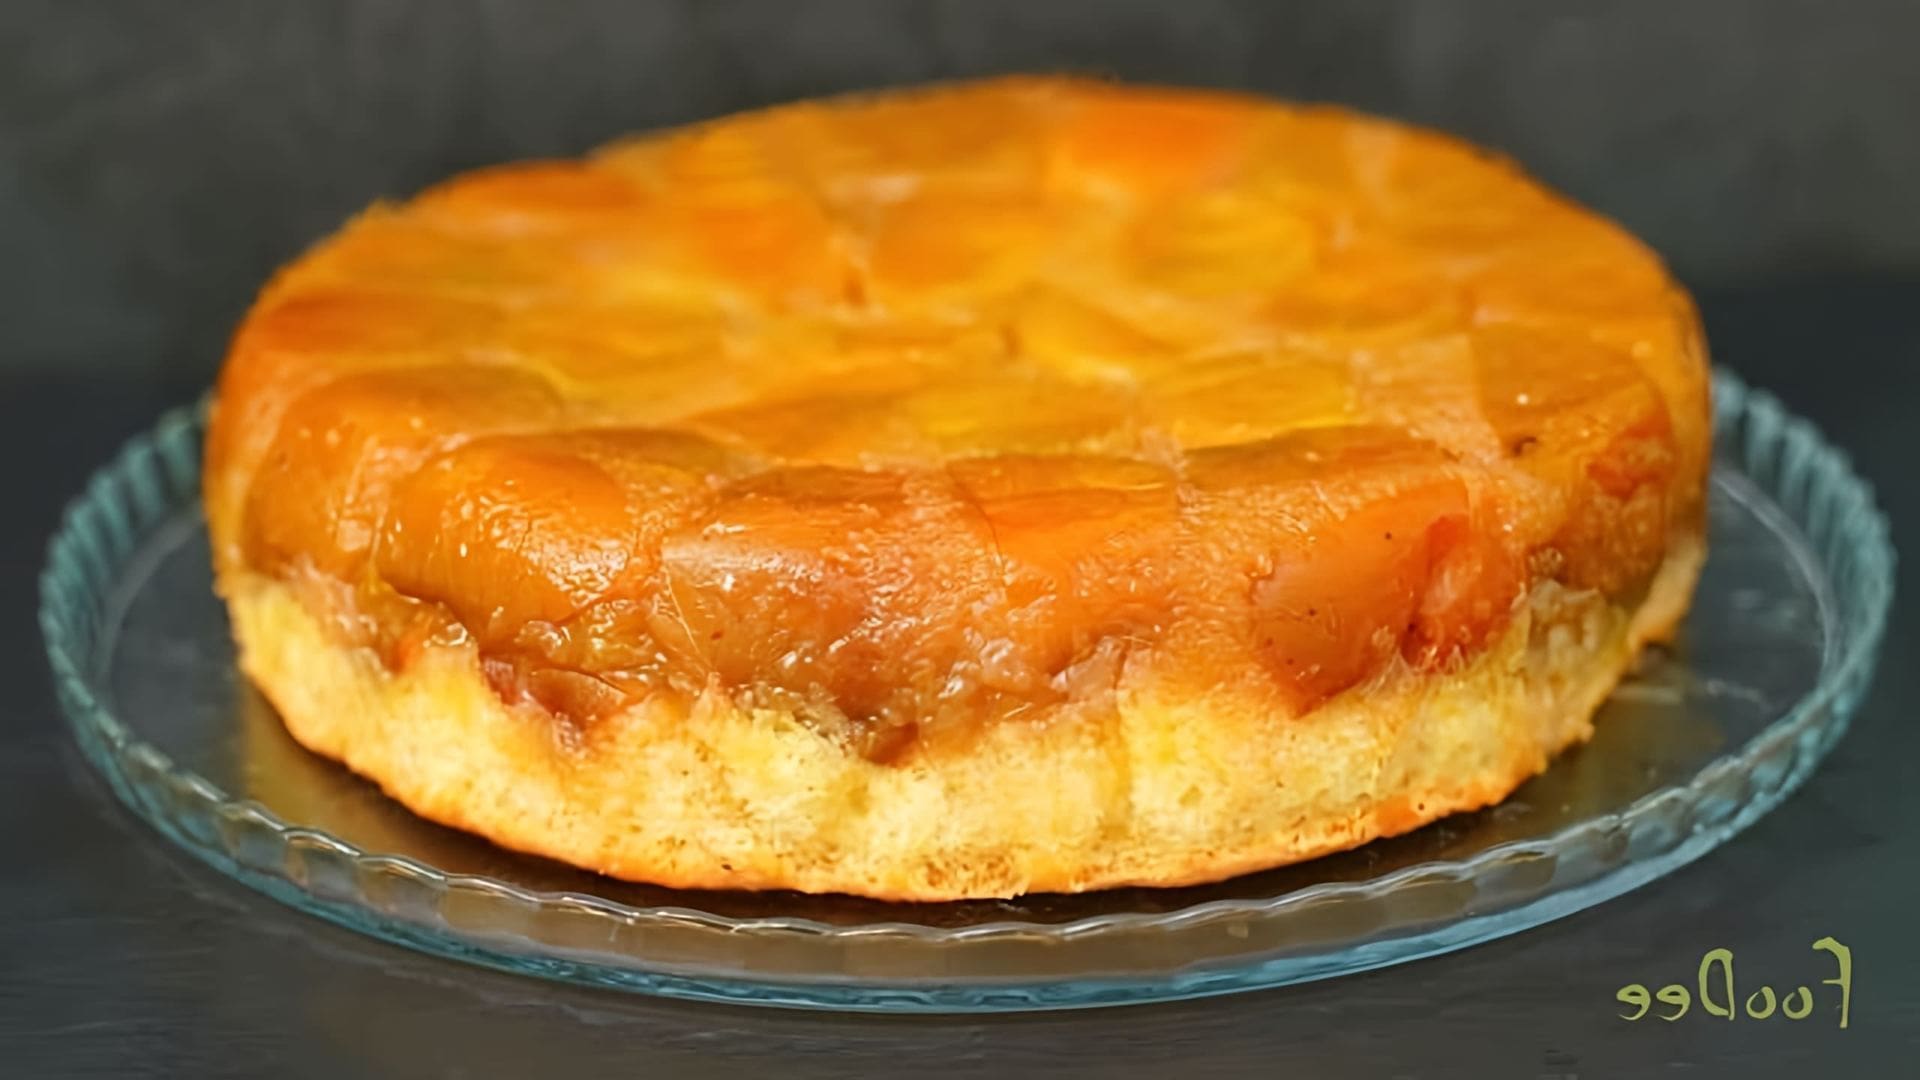 В этом видео демонстрируется рецепт яблочного янтарного пирога по рецепту Татьяны Толстой